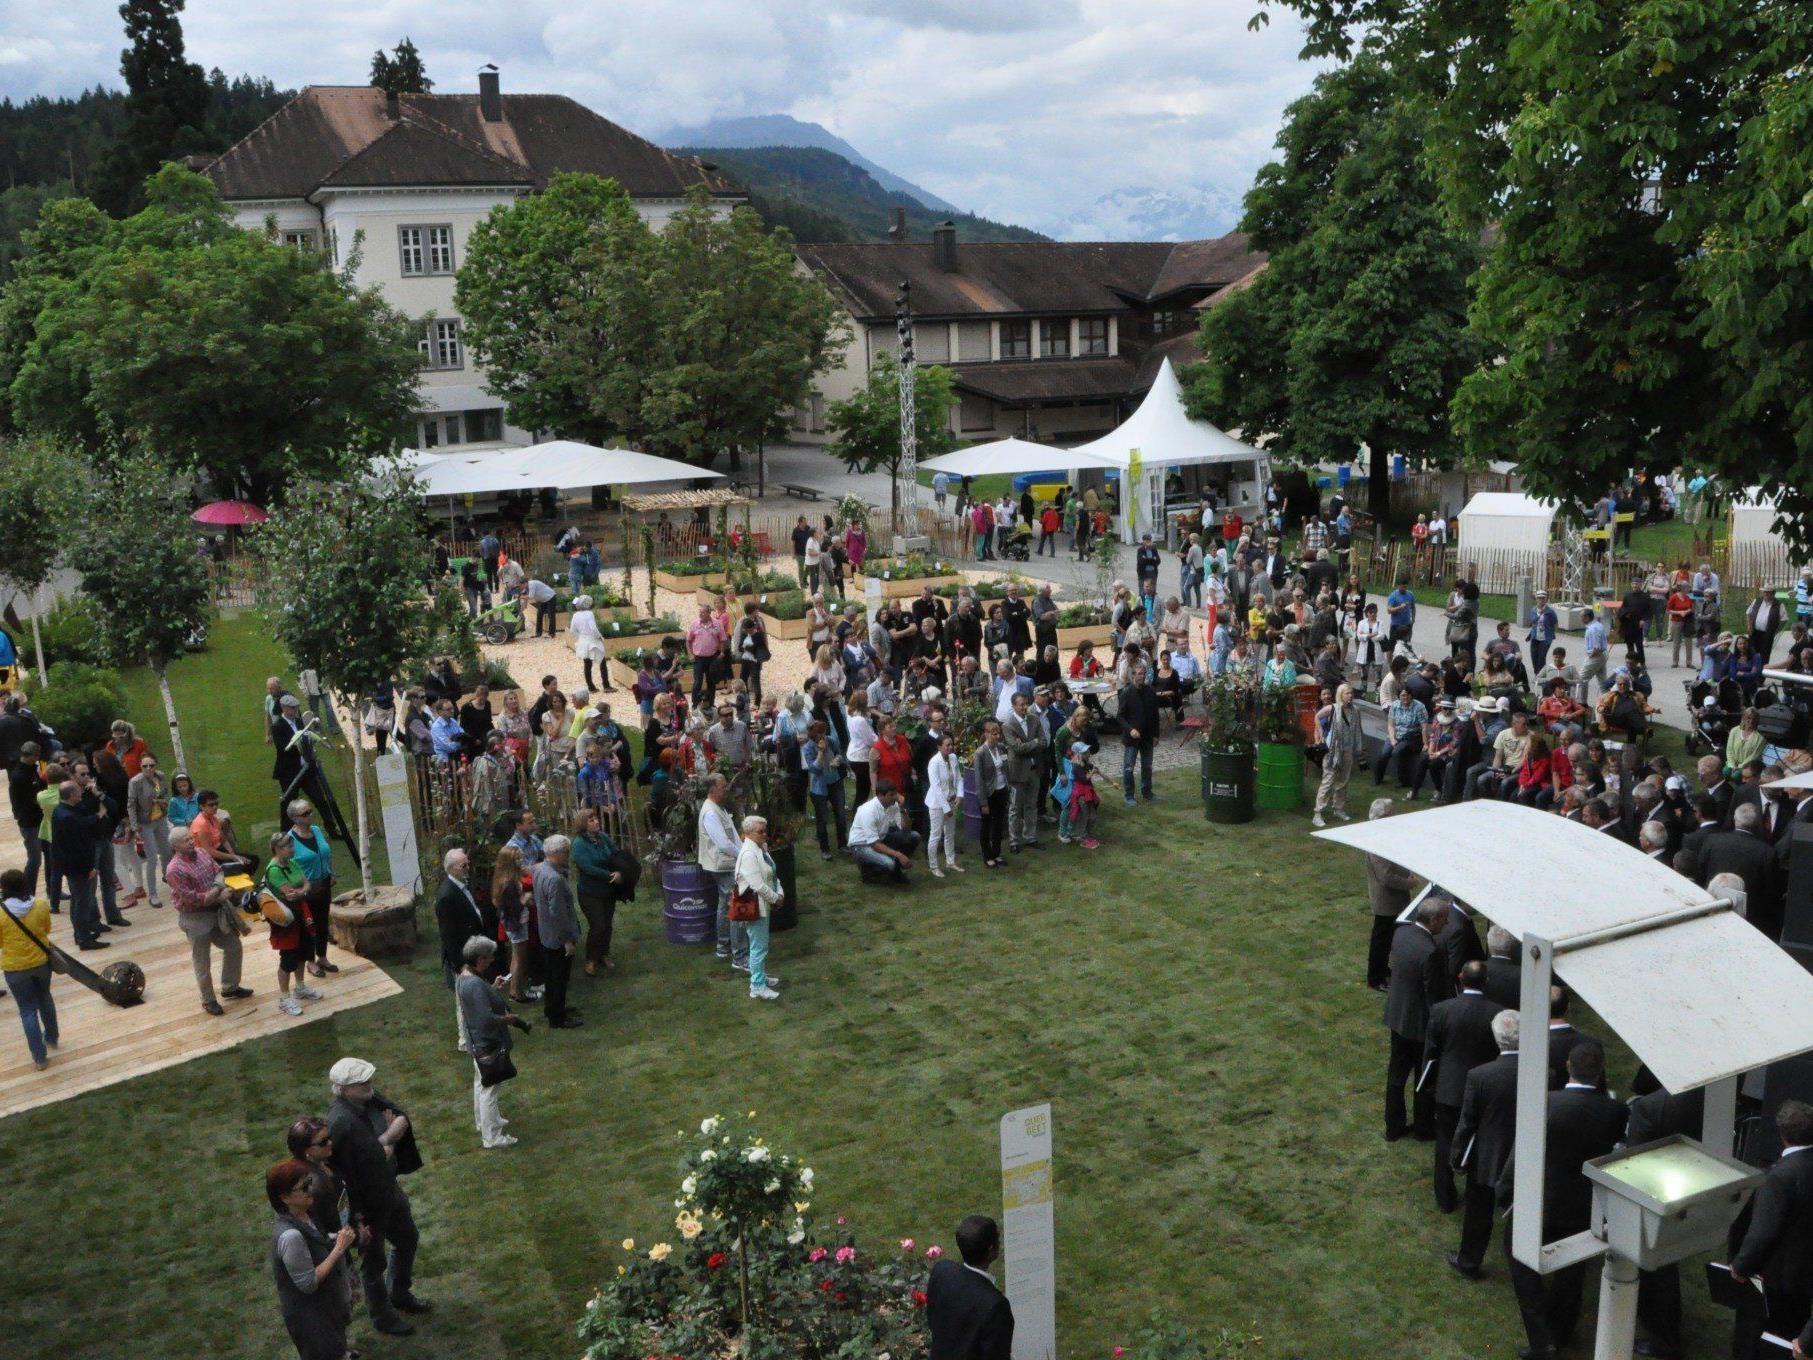 Über 5000 Gartenfans besuchten das Rankweiler Querbeet Festival am vergangenen Wochenende